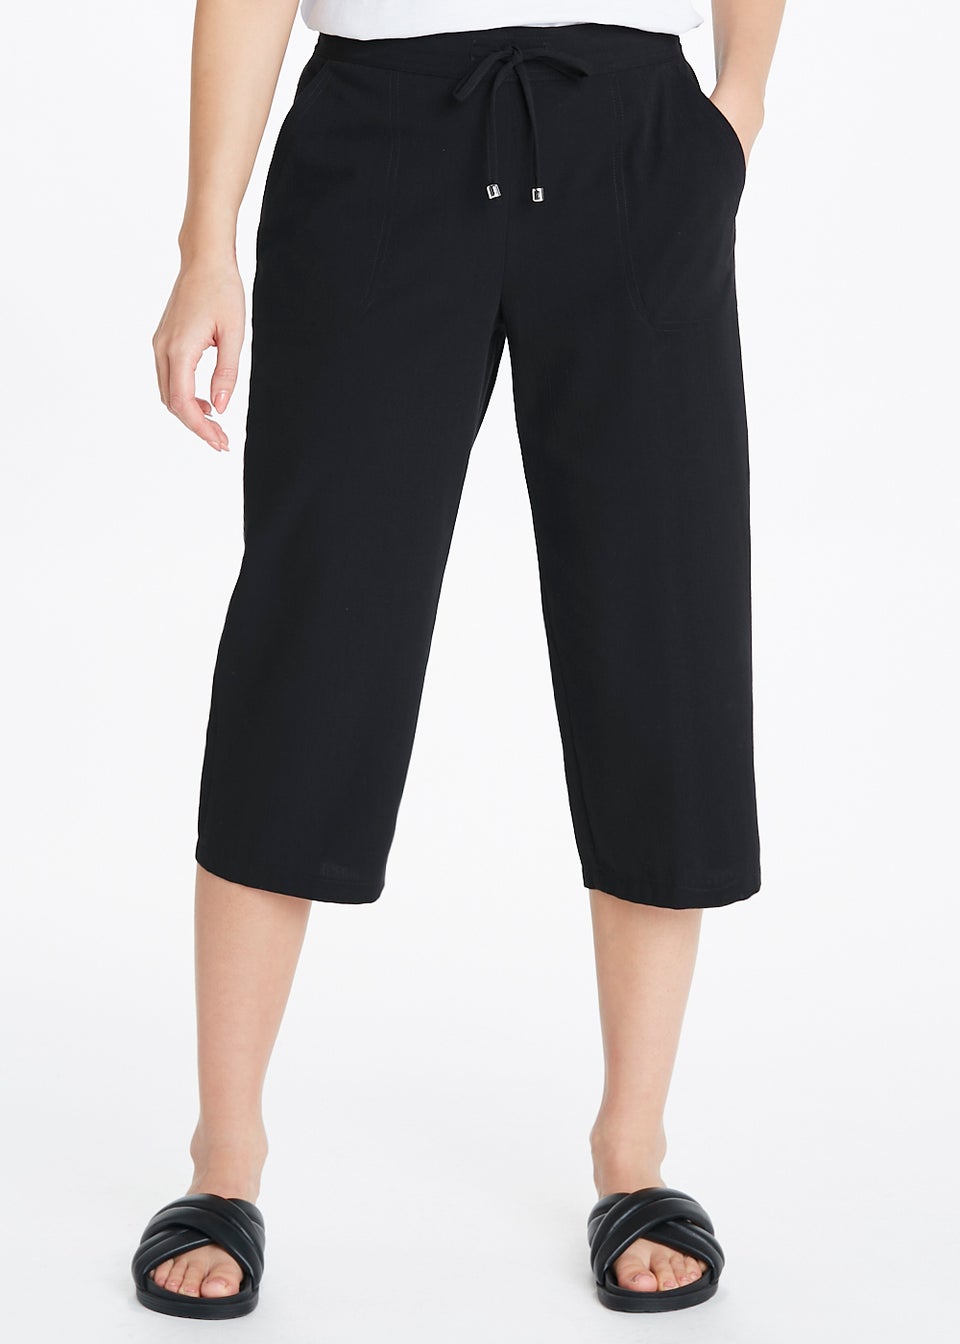 Matalan Womens Black Trousers Size 14 L28 in – Preworn Ltd